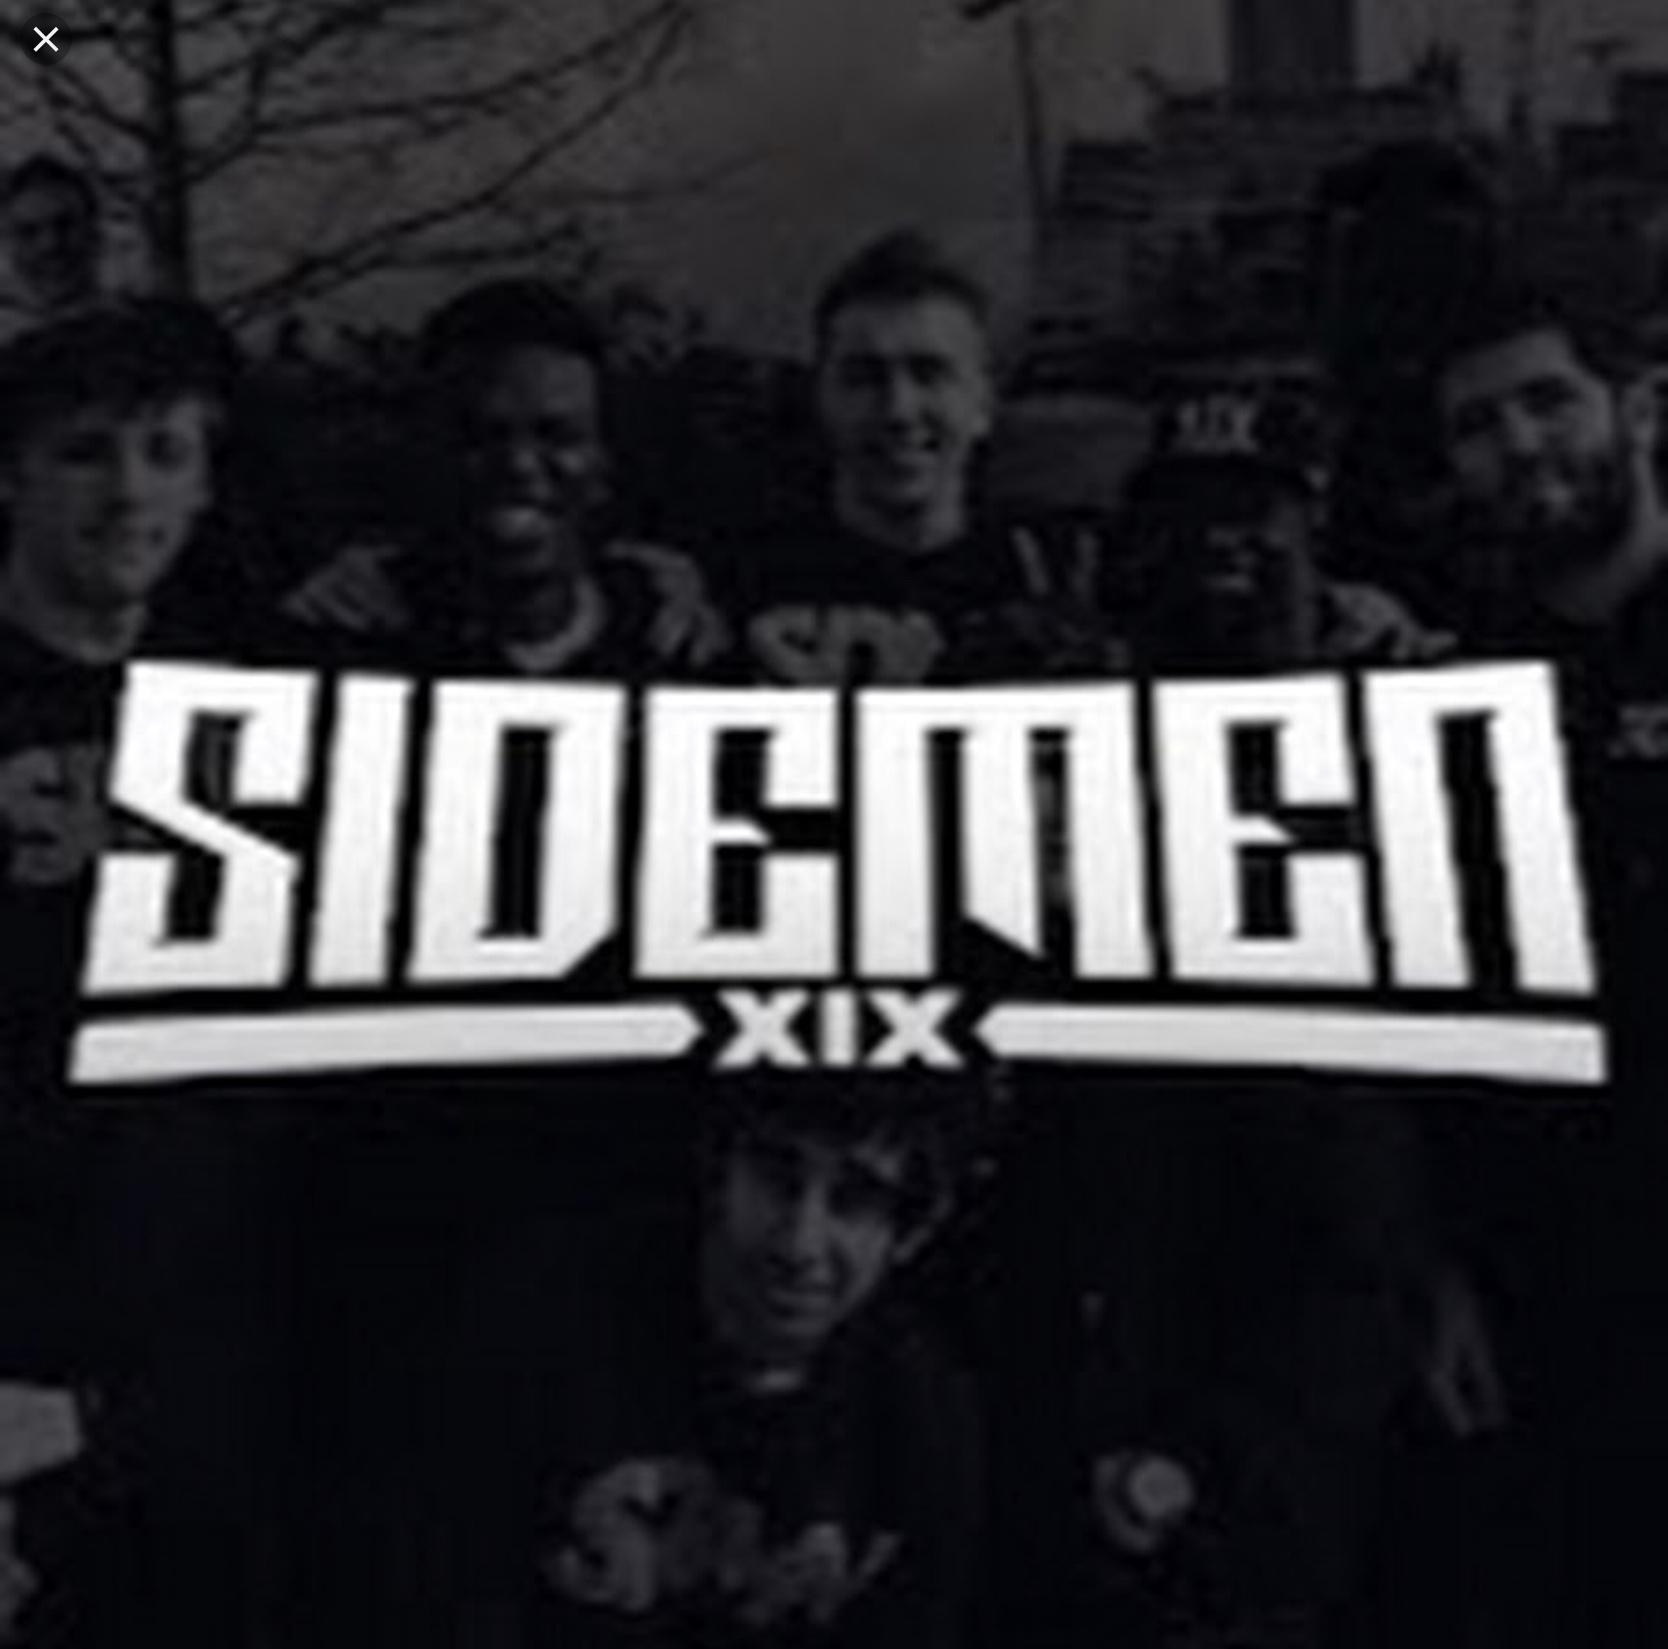 The Sidemen. The Ultimate Sidemen